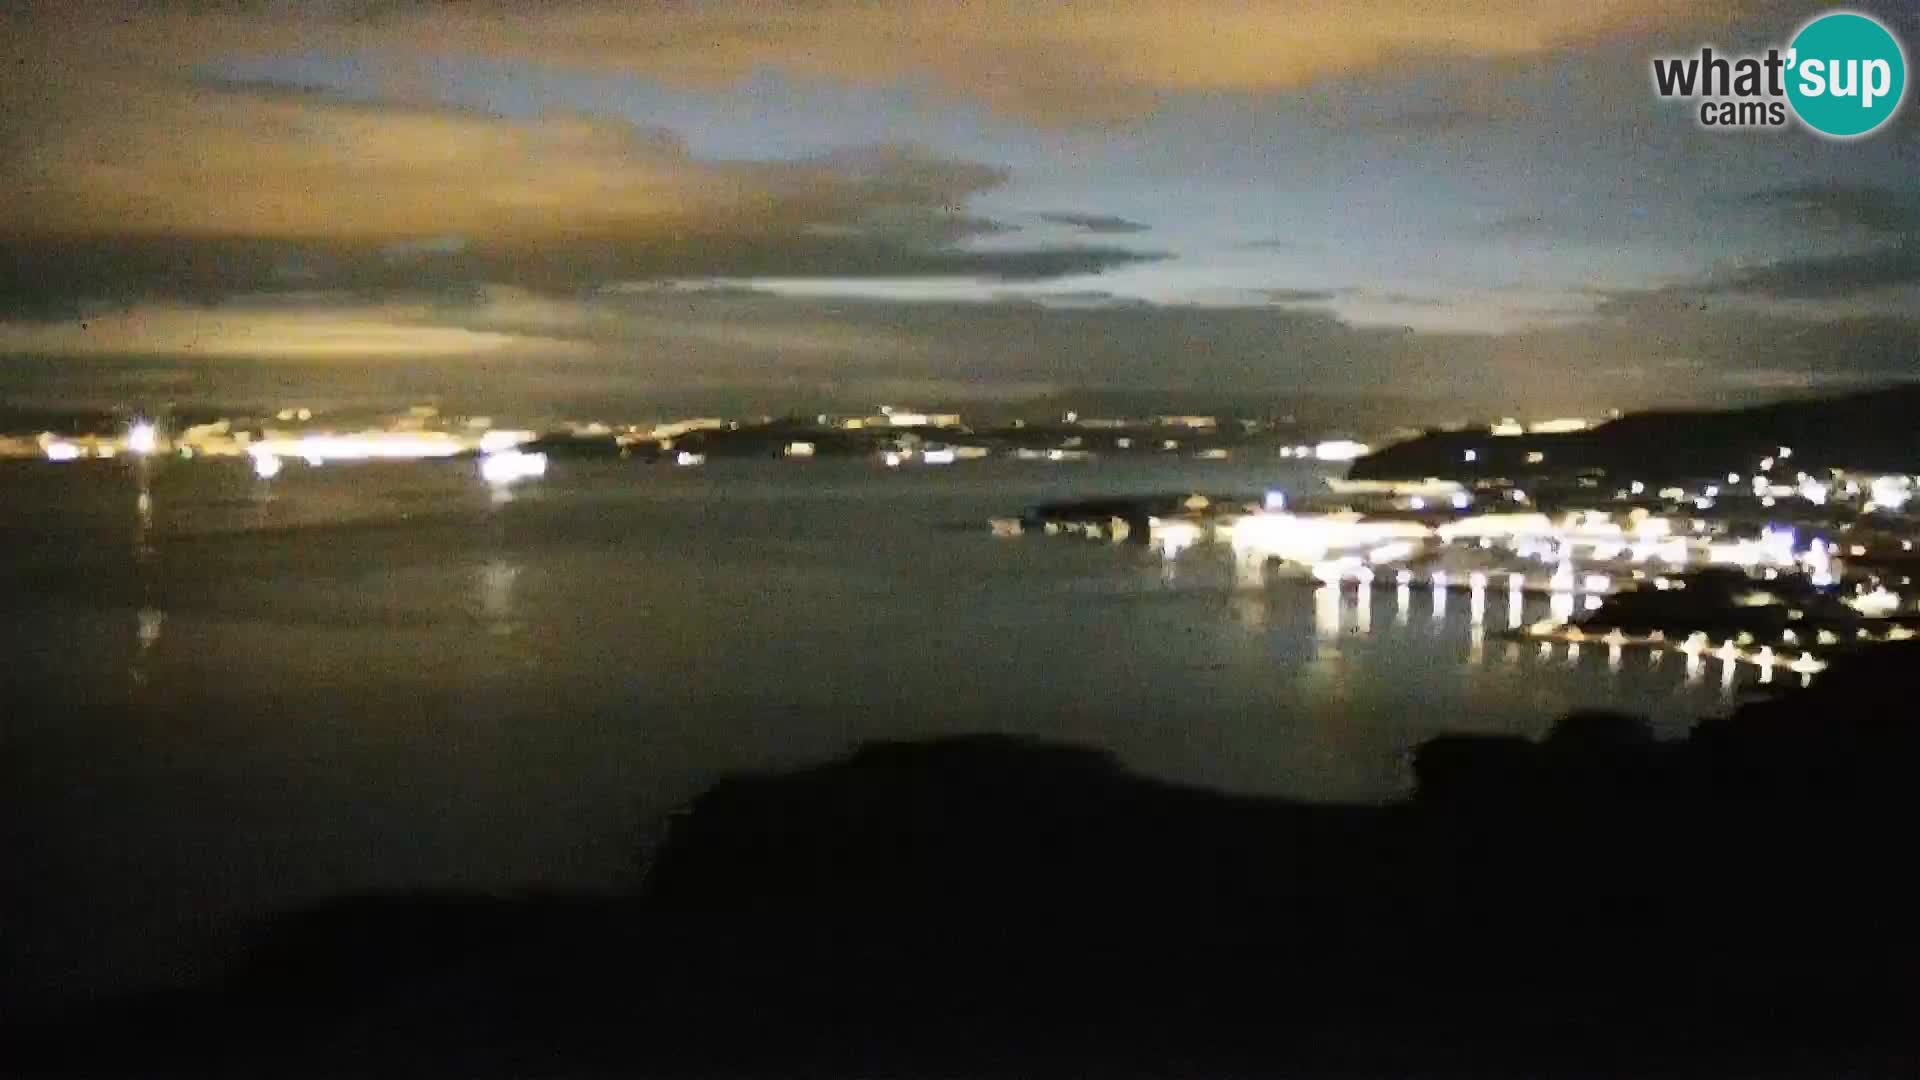 Webcam Izola – Live streaming from San Simon beach